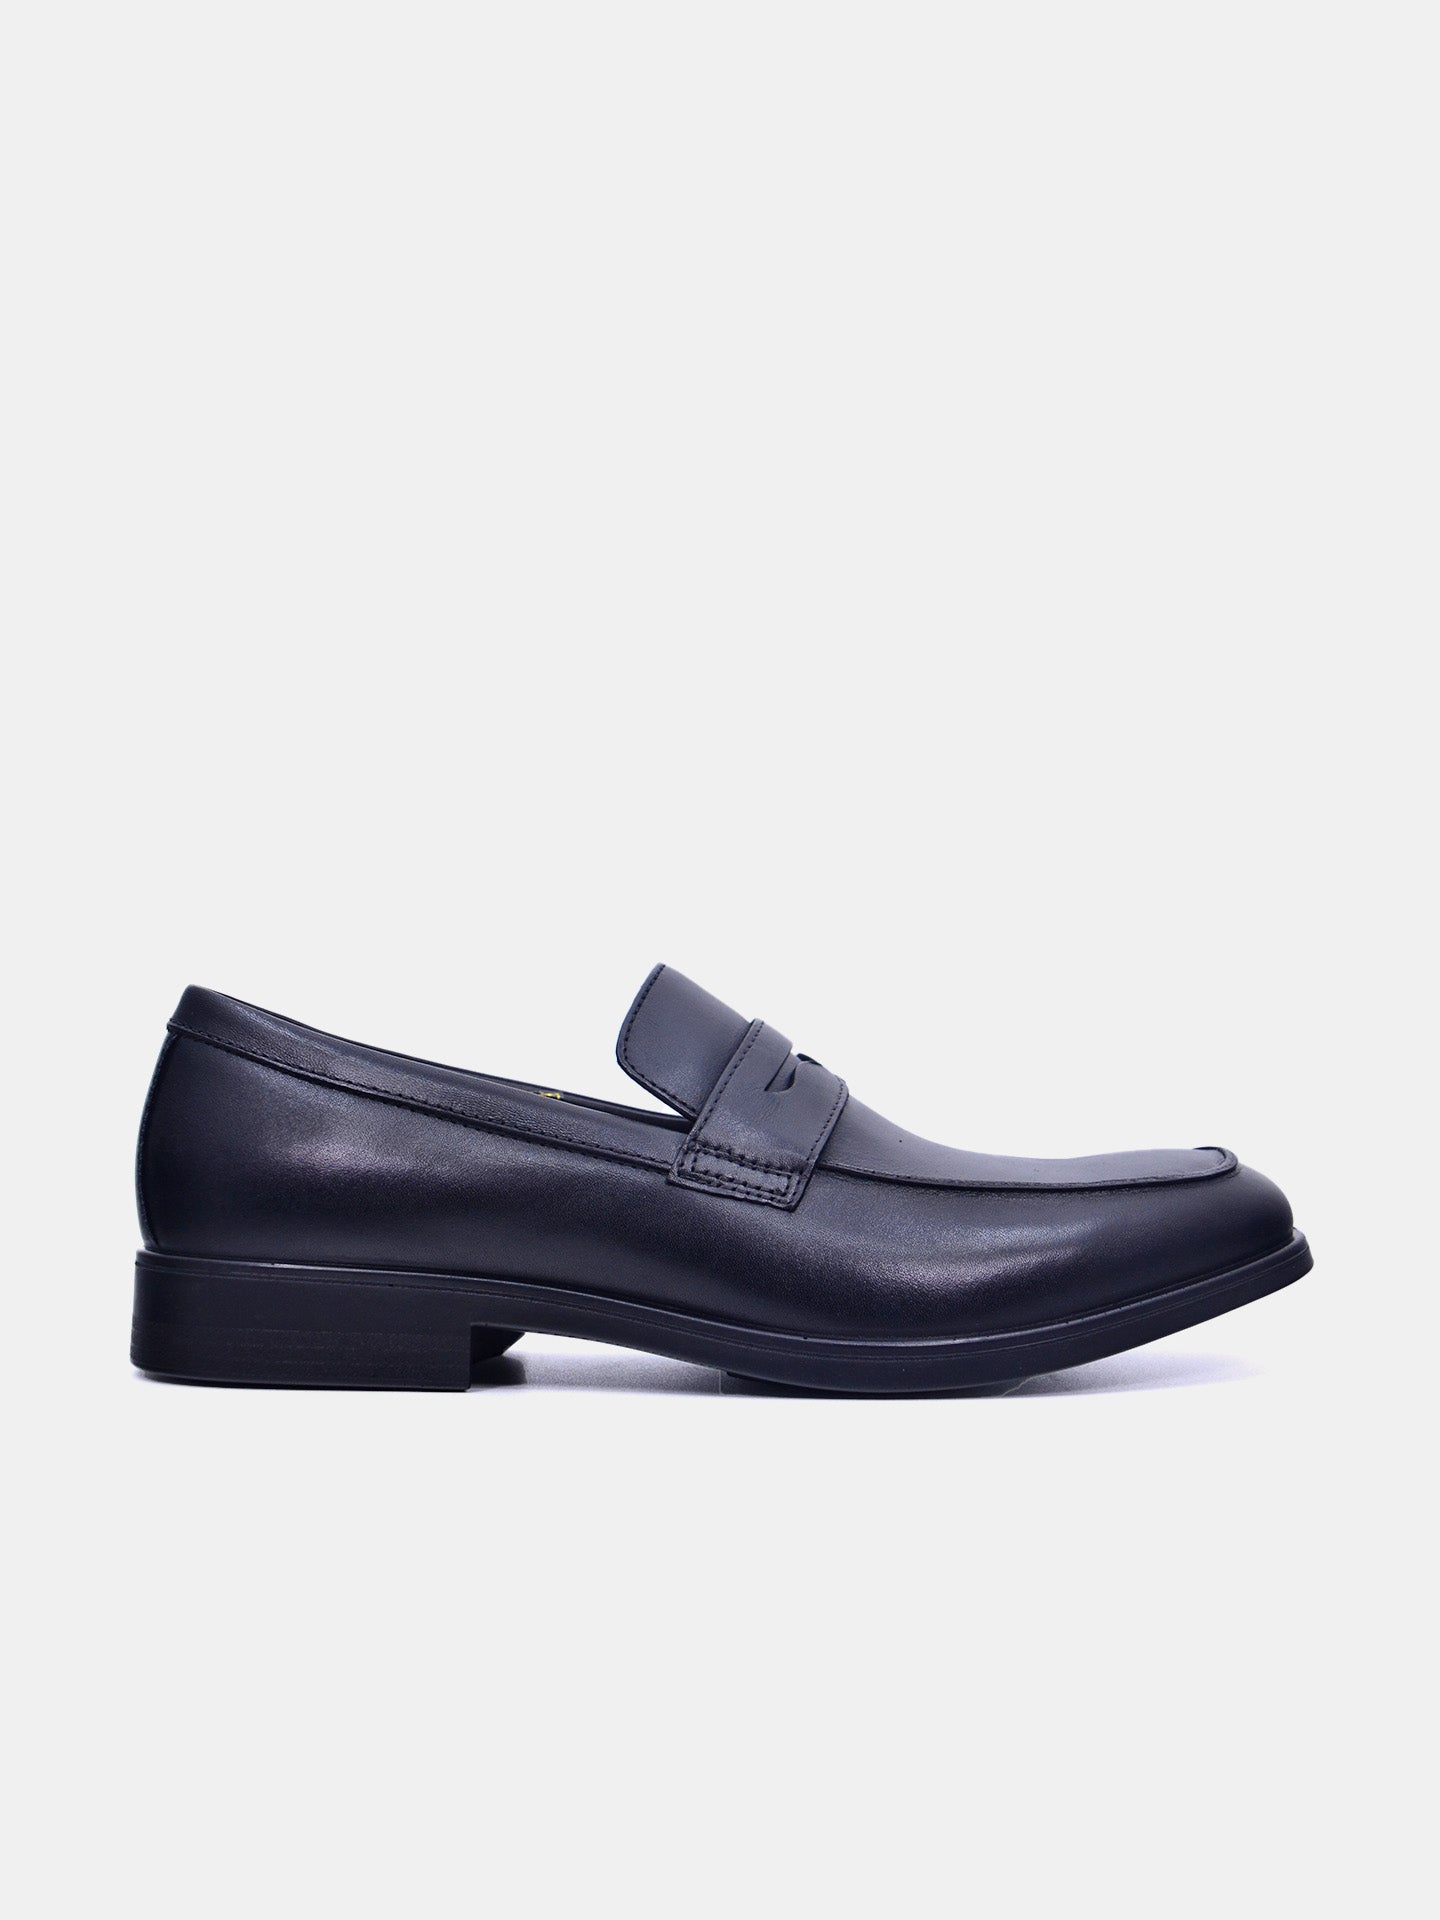 Josef Seibel M756 Men's Formal Shoes #color_Black